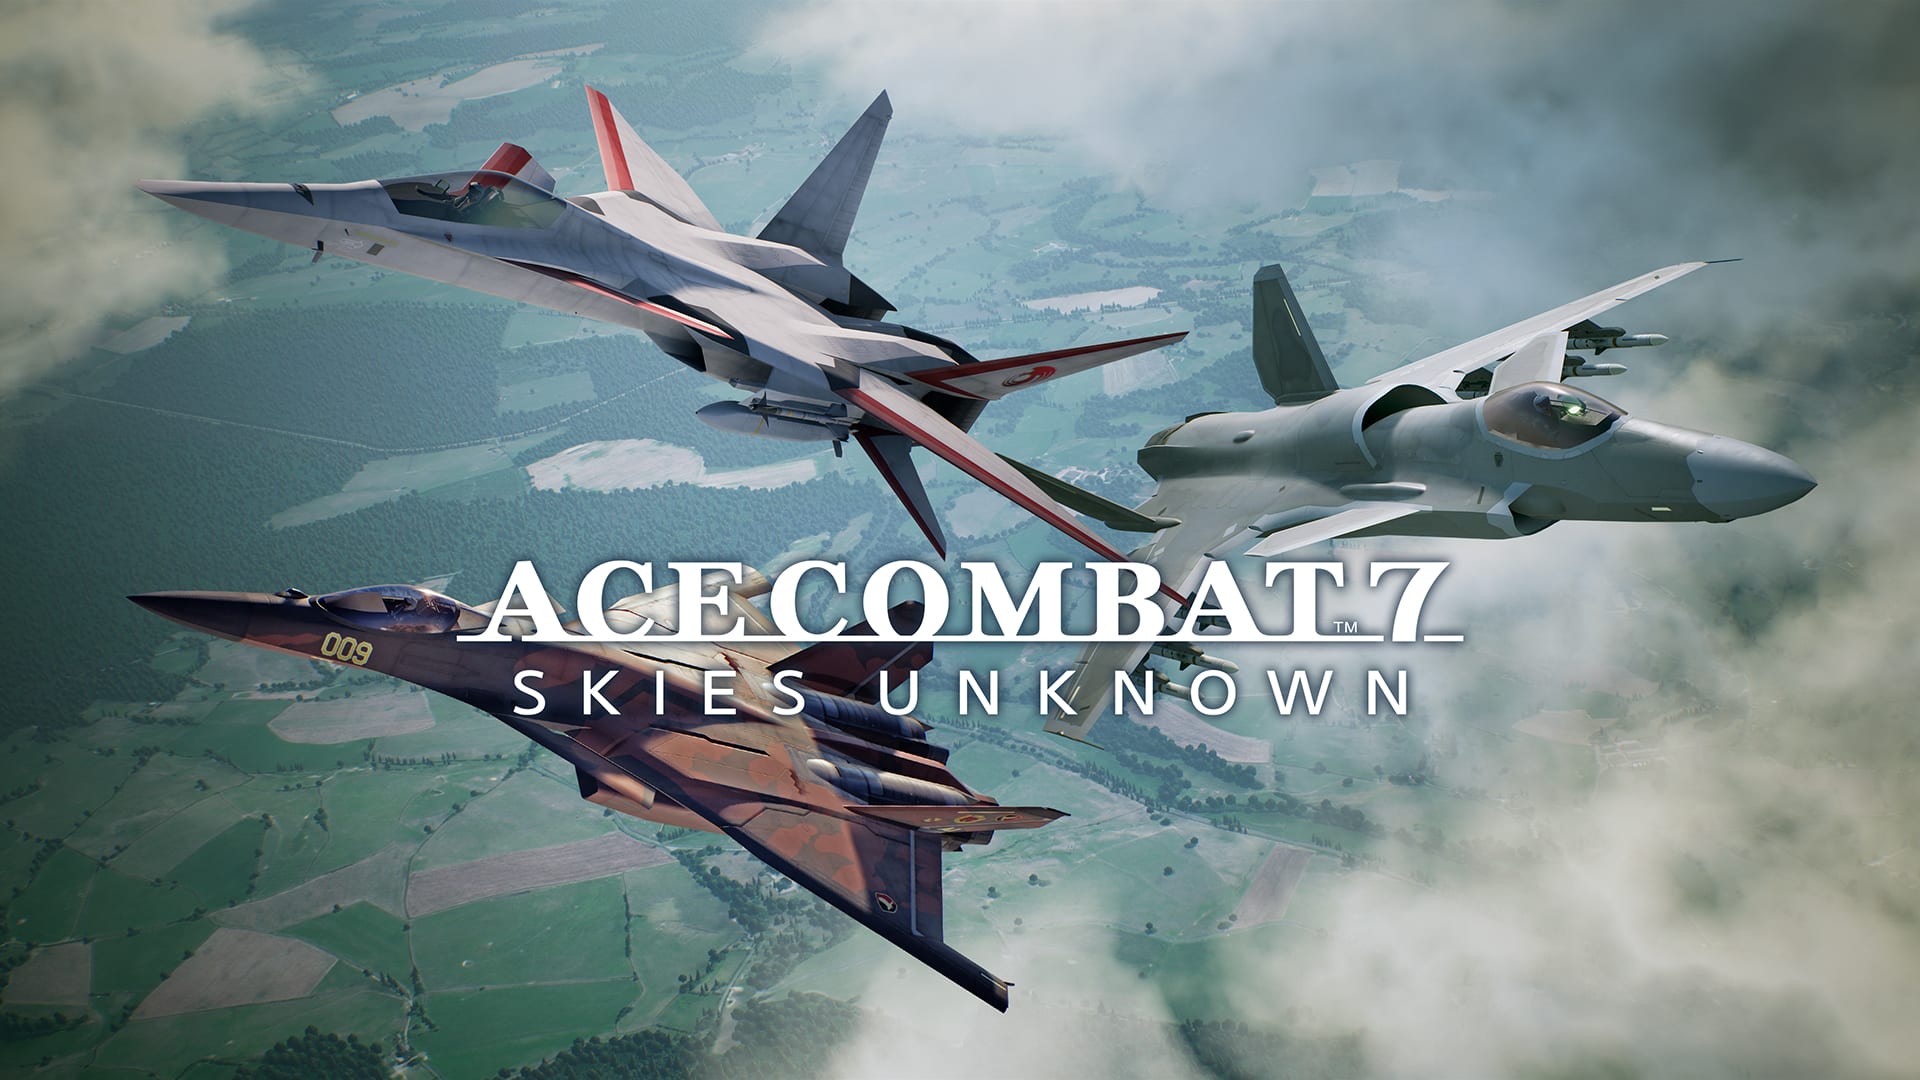 ACE COMBAT™7: SKIES UNKNOWN - Conjunto de serie de aviones originales